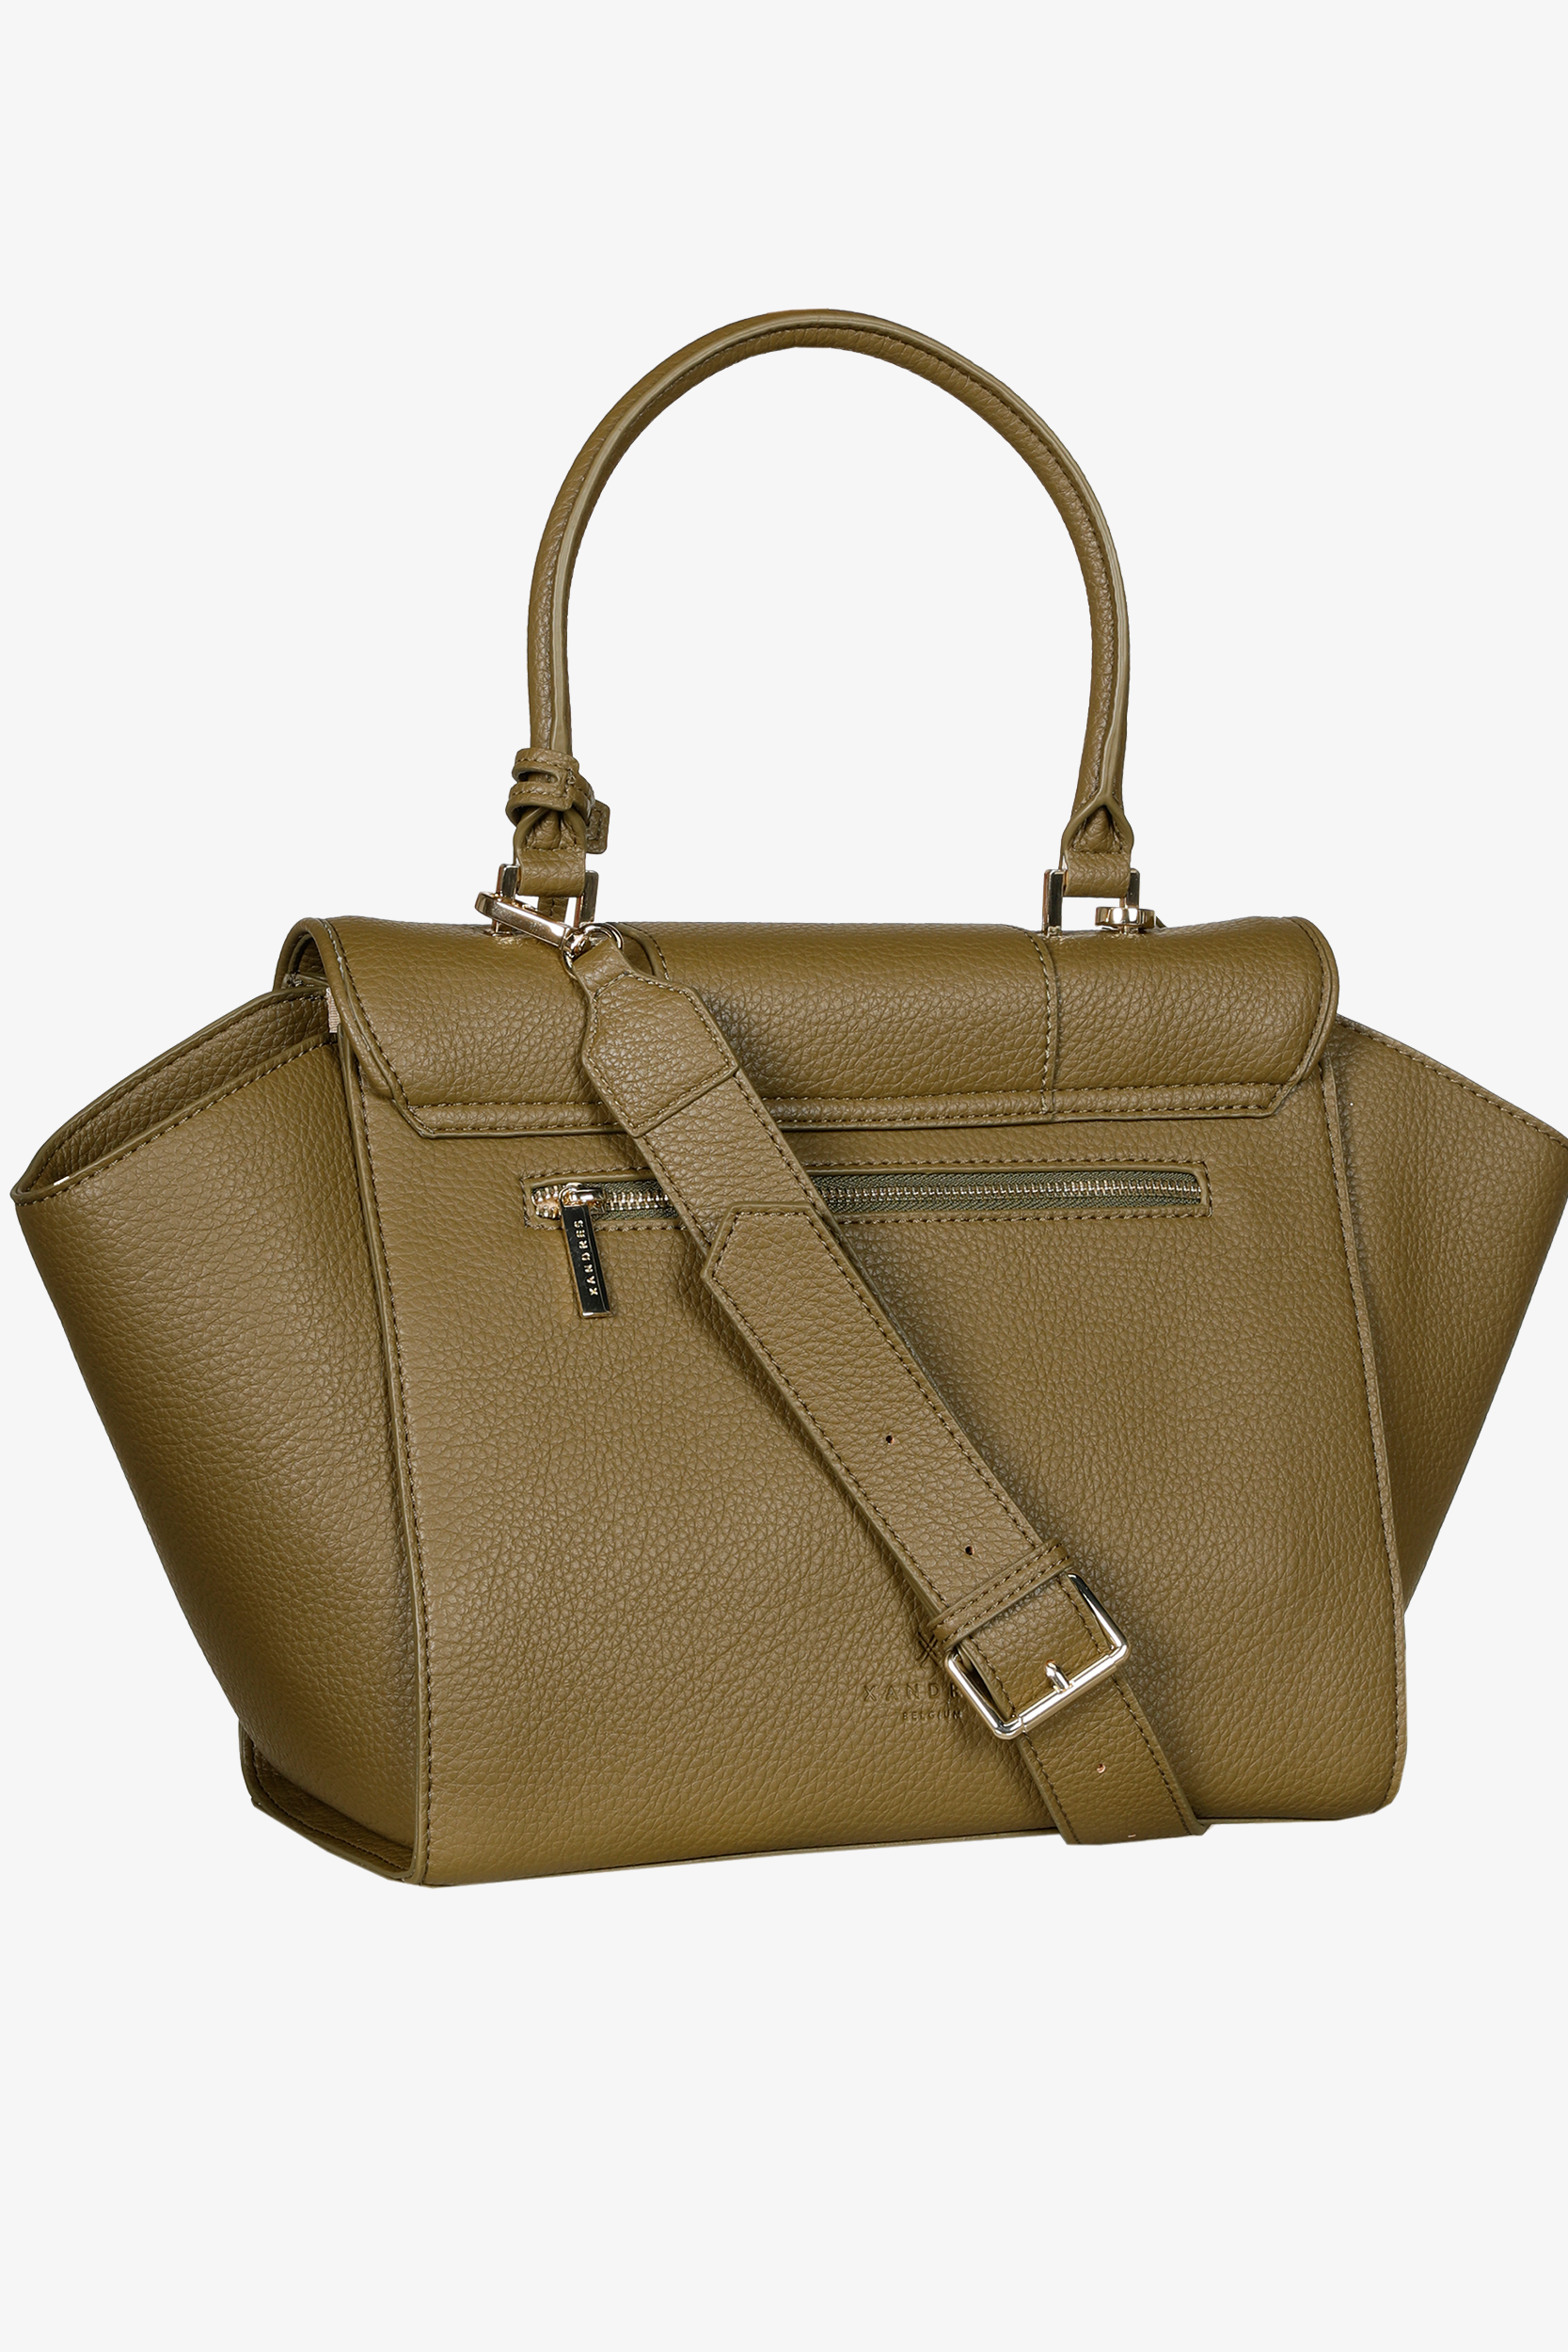 Stylish handbag